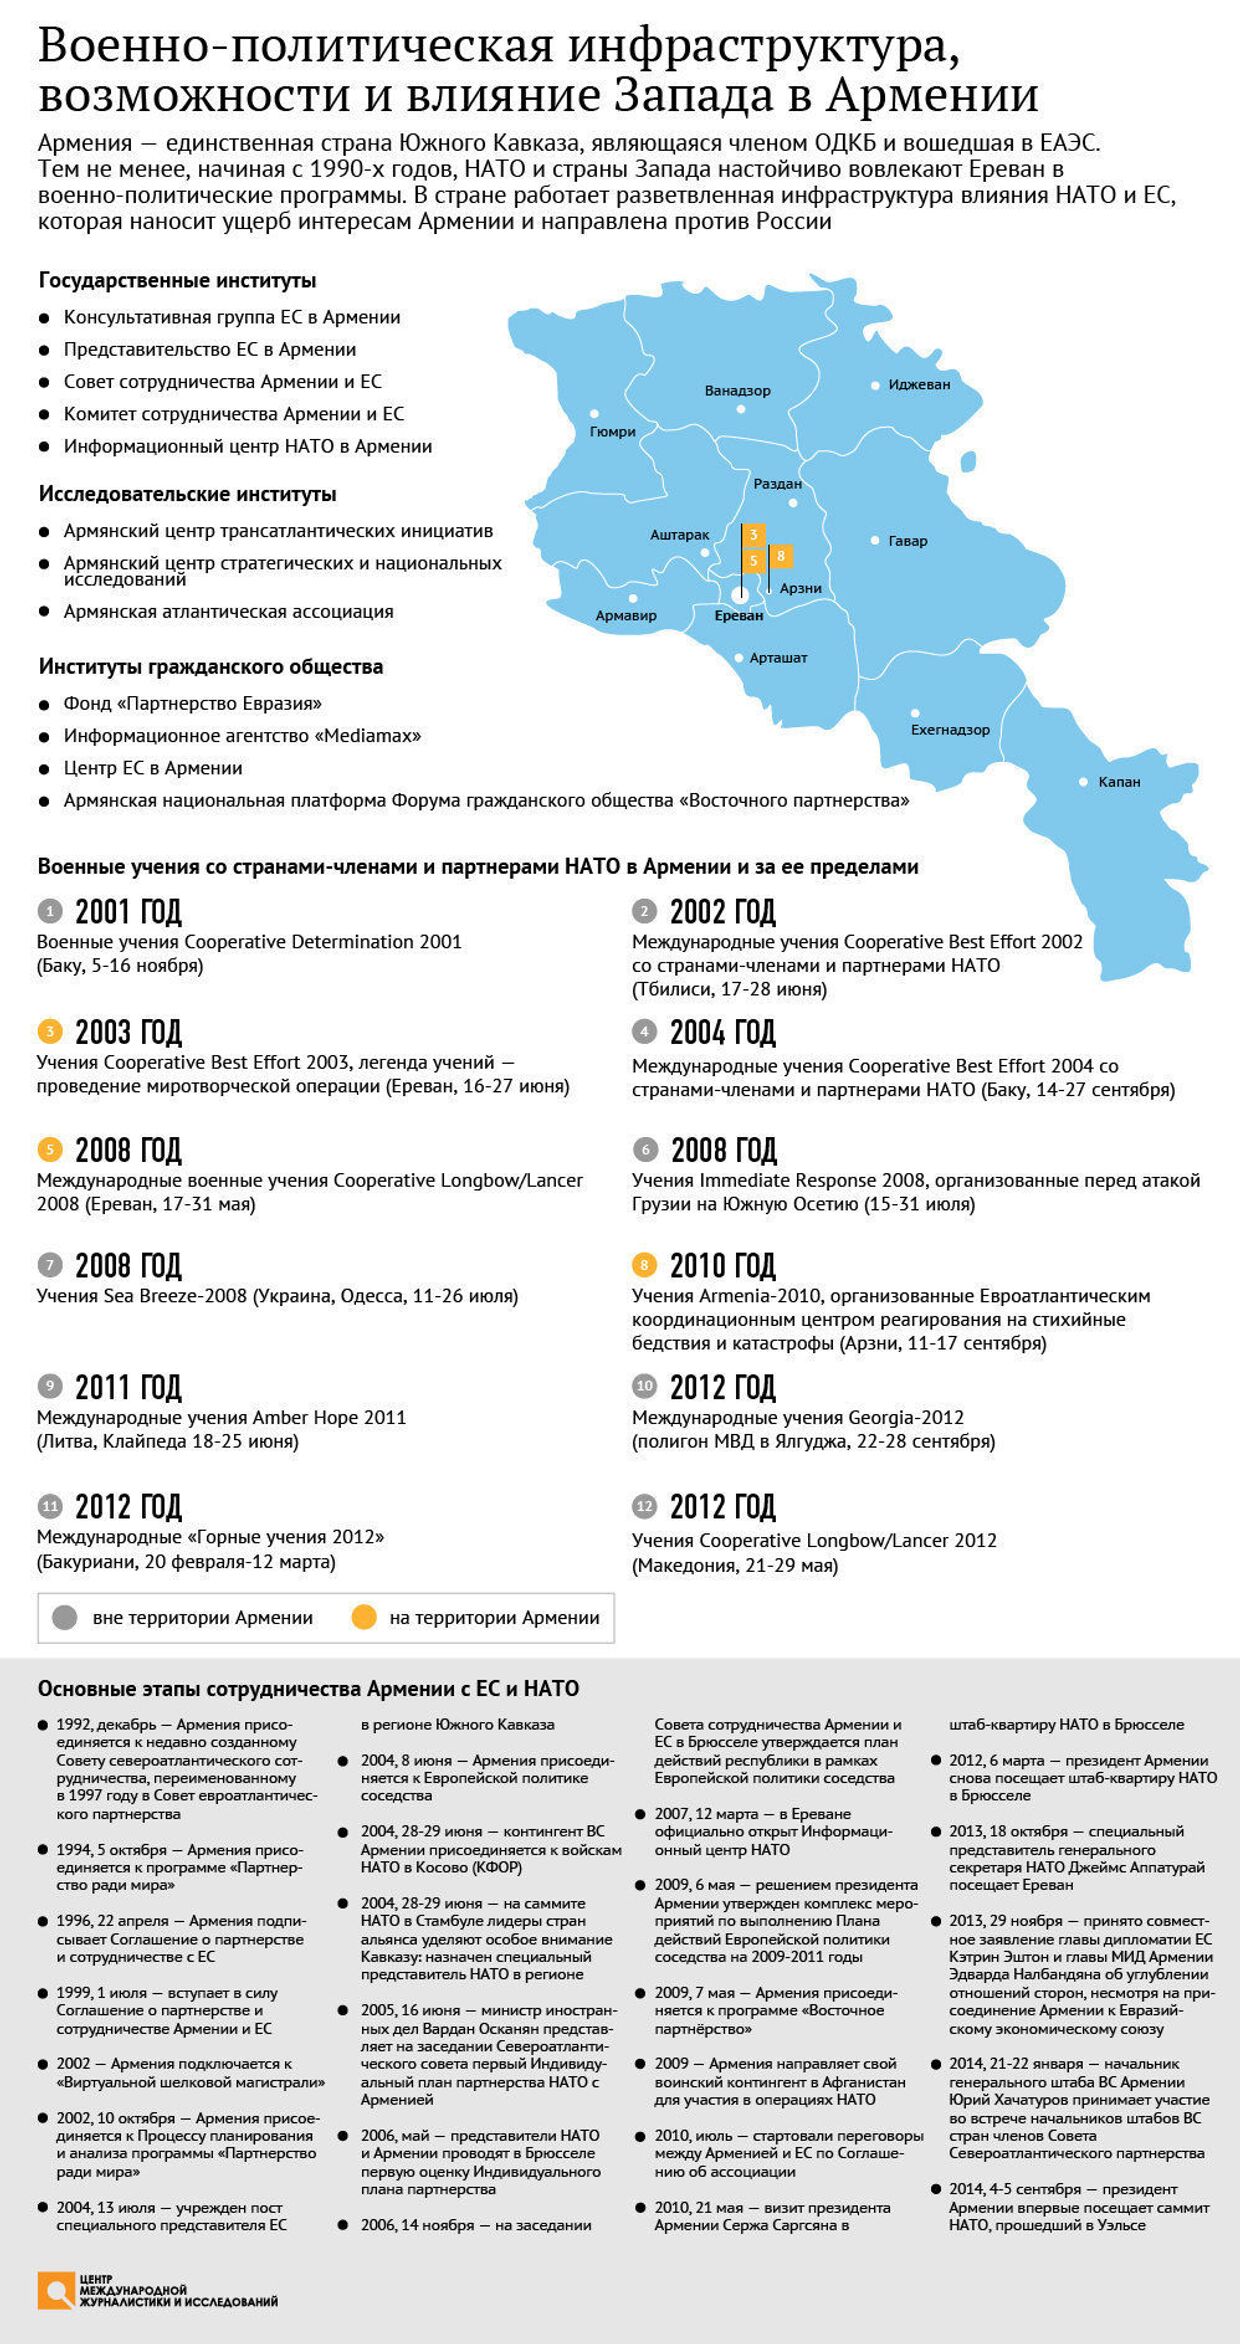 Военно-политическая инфраструктура и возможности Запада в Армении